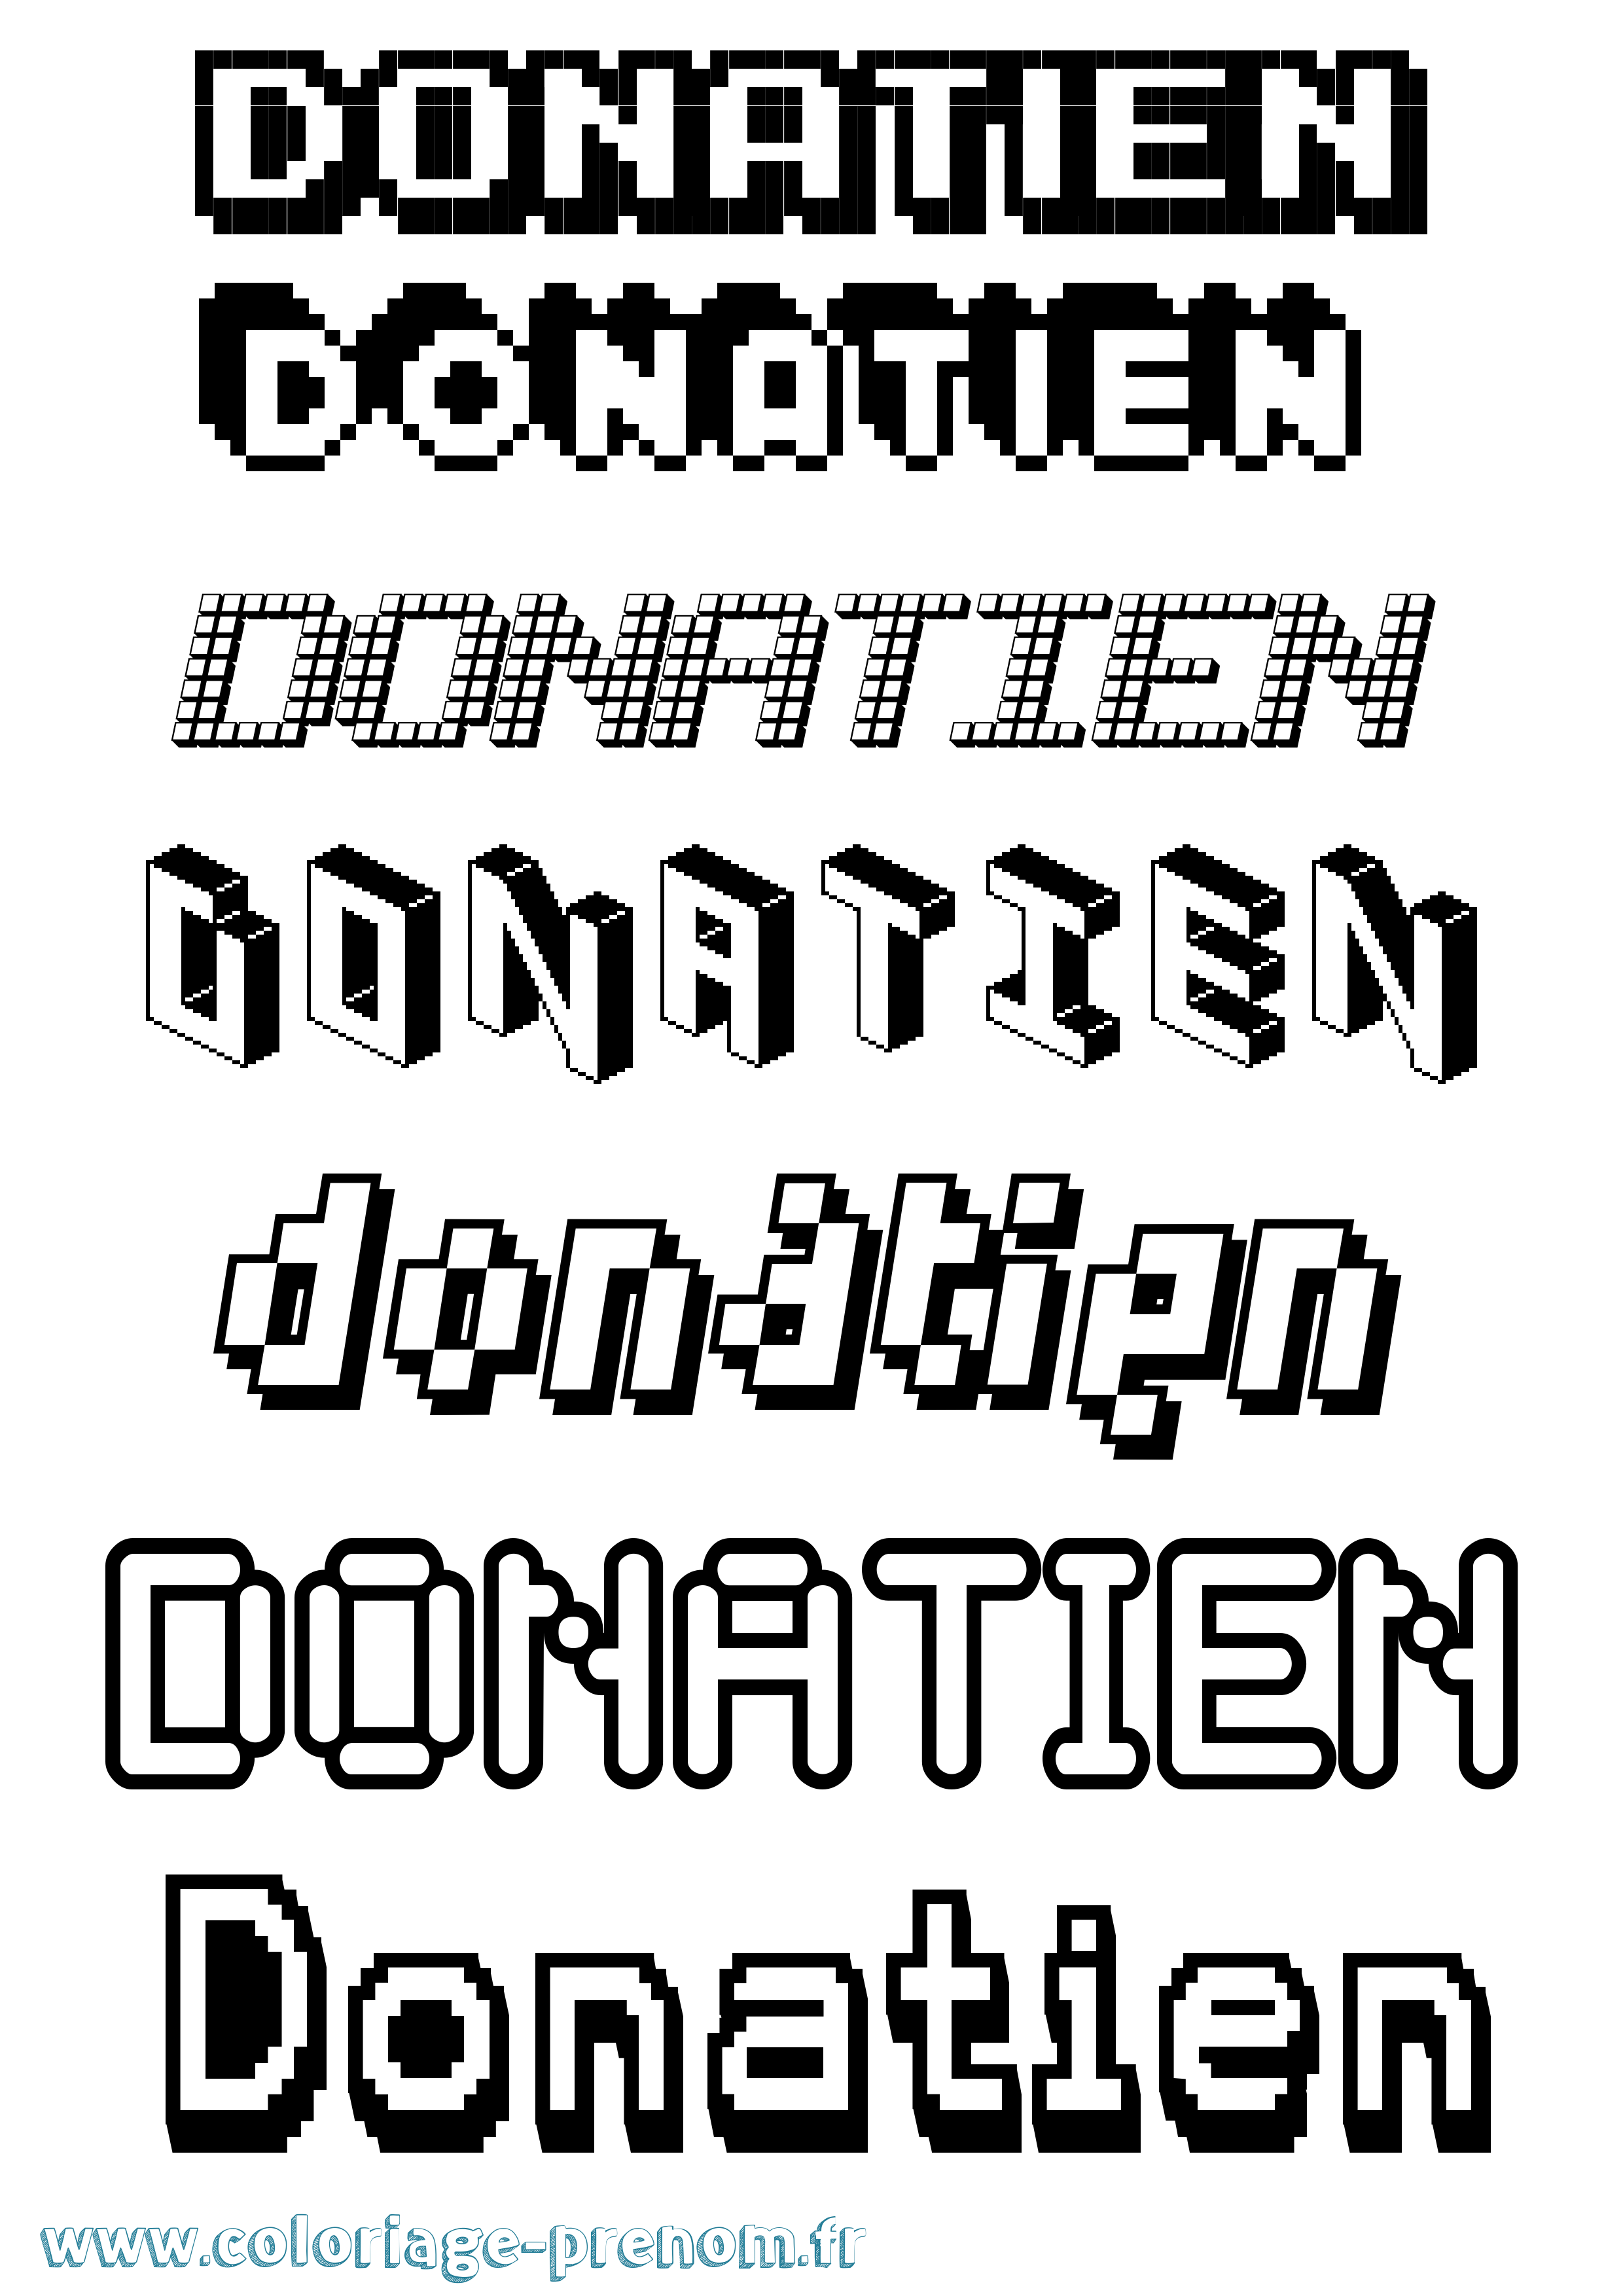 Coloriage prénom Donatien Pixel